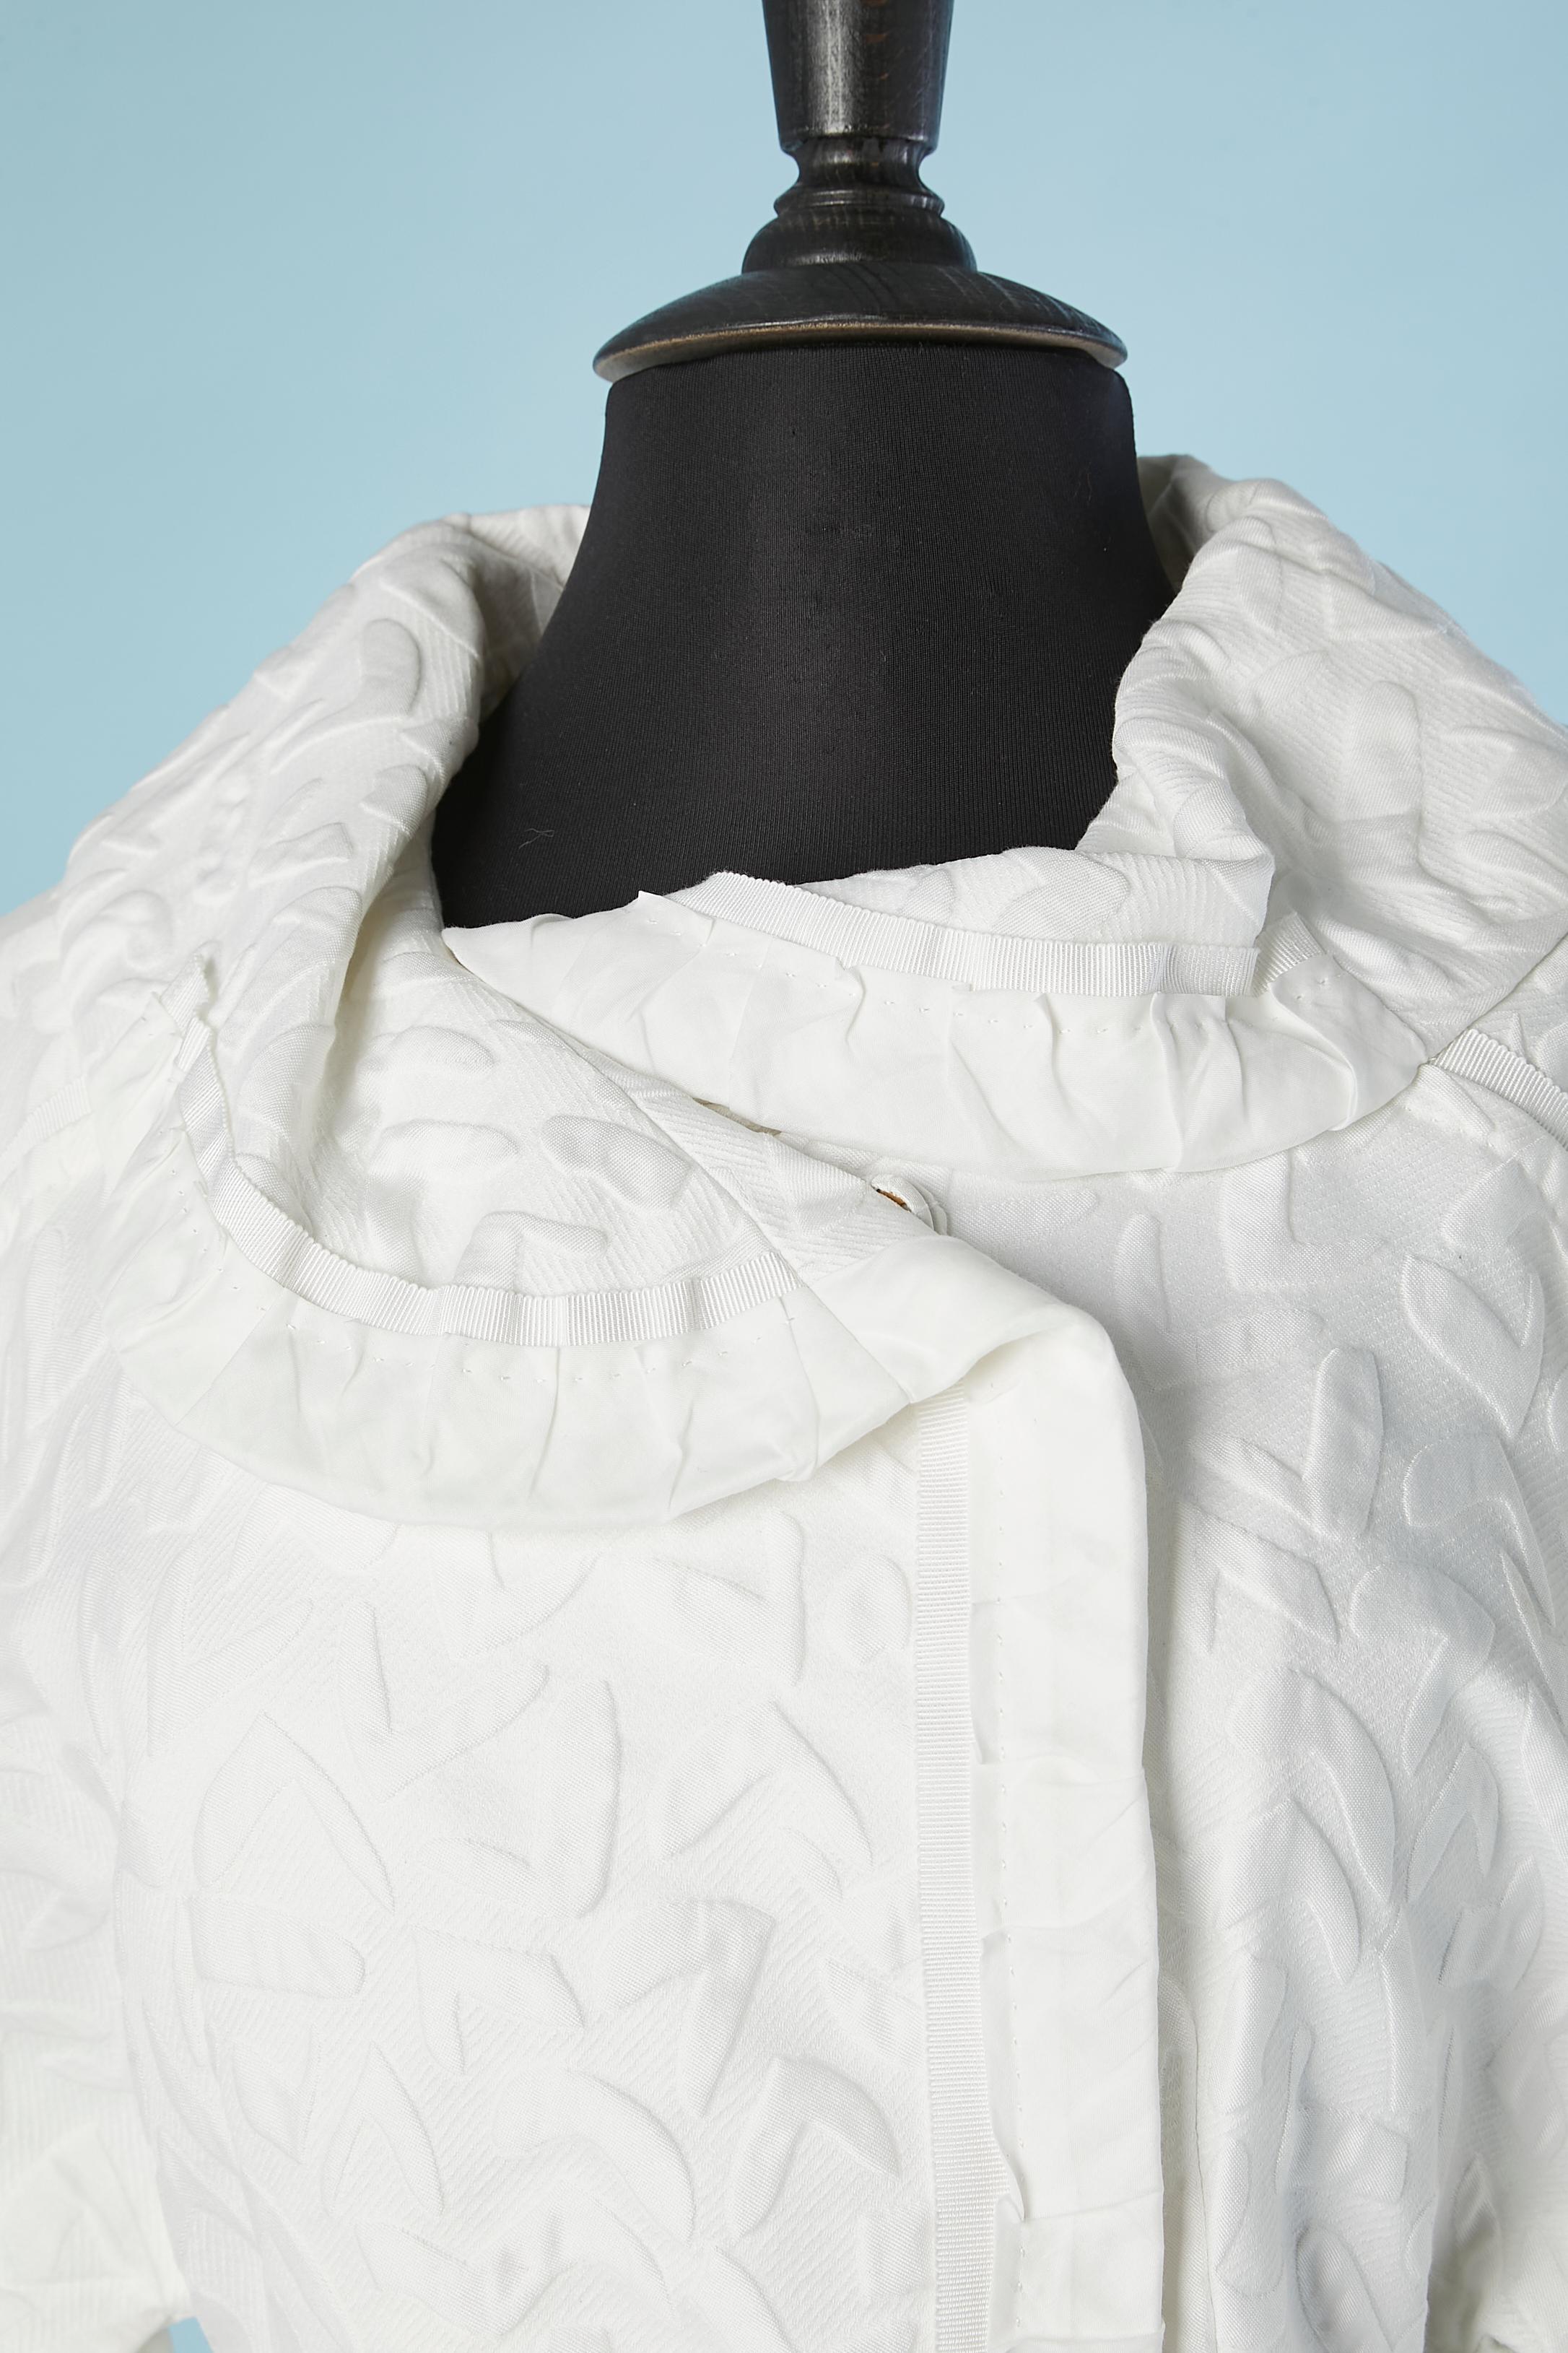 Ensemble manteau et jupe en coton jacquard blanc. Manteau double boutonnage fermé par un bouton pression (recouvert de tissu). Ceinture en gros grain.
Jupe se fermant sur le côté gauche par une fermeture éclair, nœud gros grain au milieu du